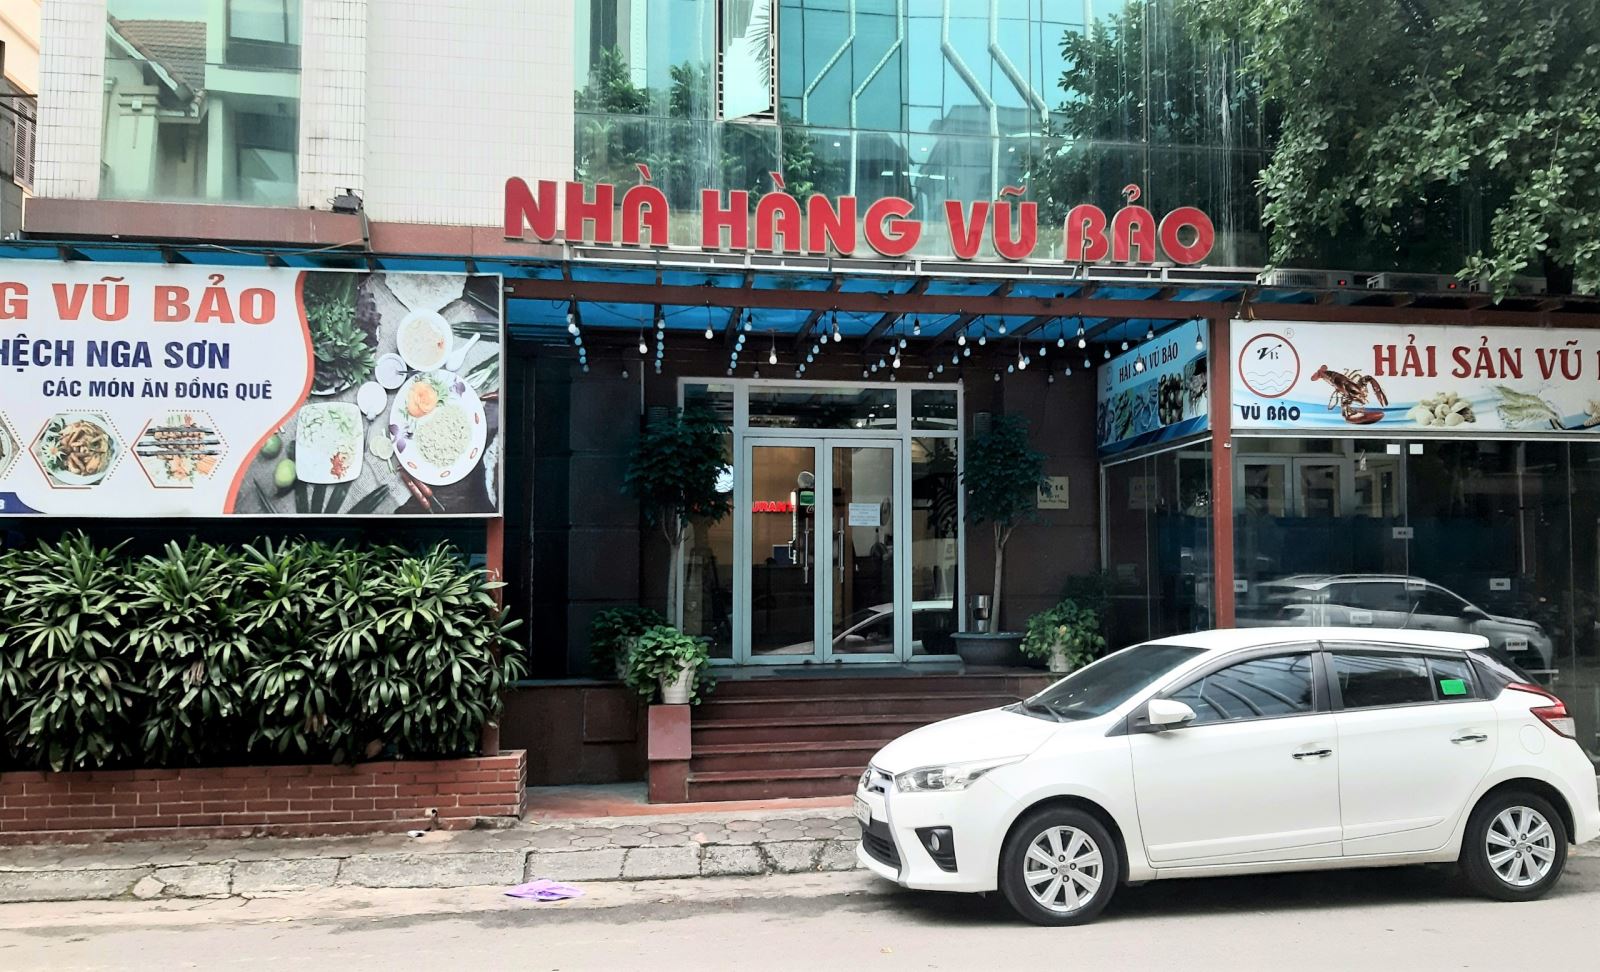 Nhà hàng Vũ Bảo tại tòa biệt thự 14 (ngõ 75 Trần Thái Tông, Cầu Giấy, Hà Nội). Ảnh: An Luých